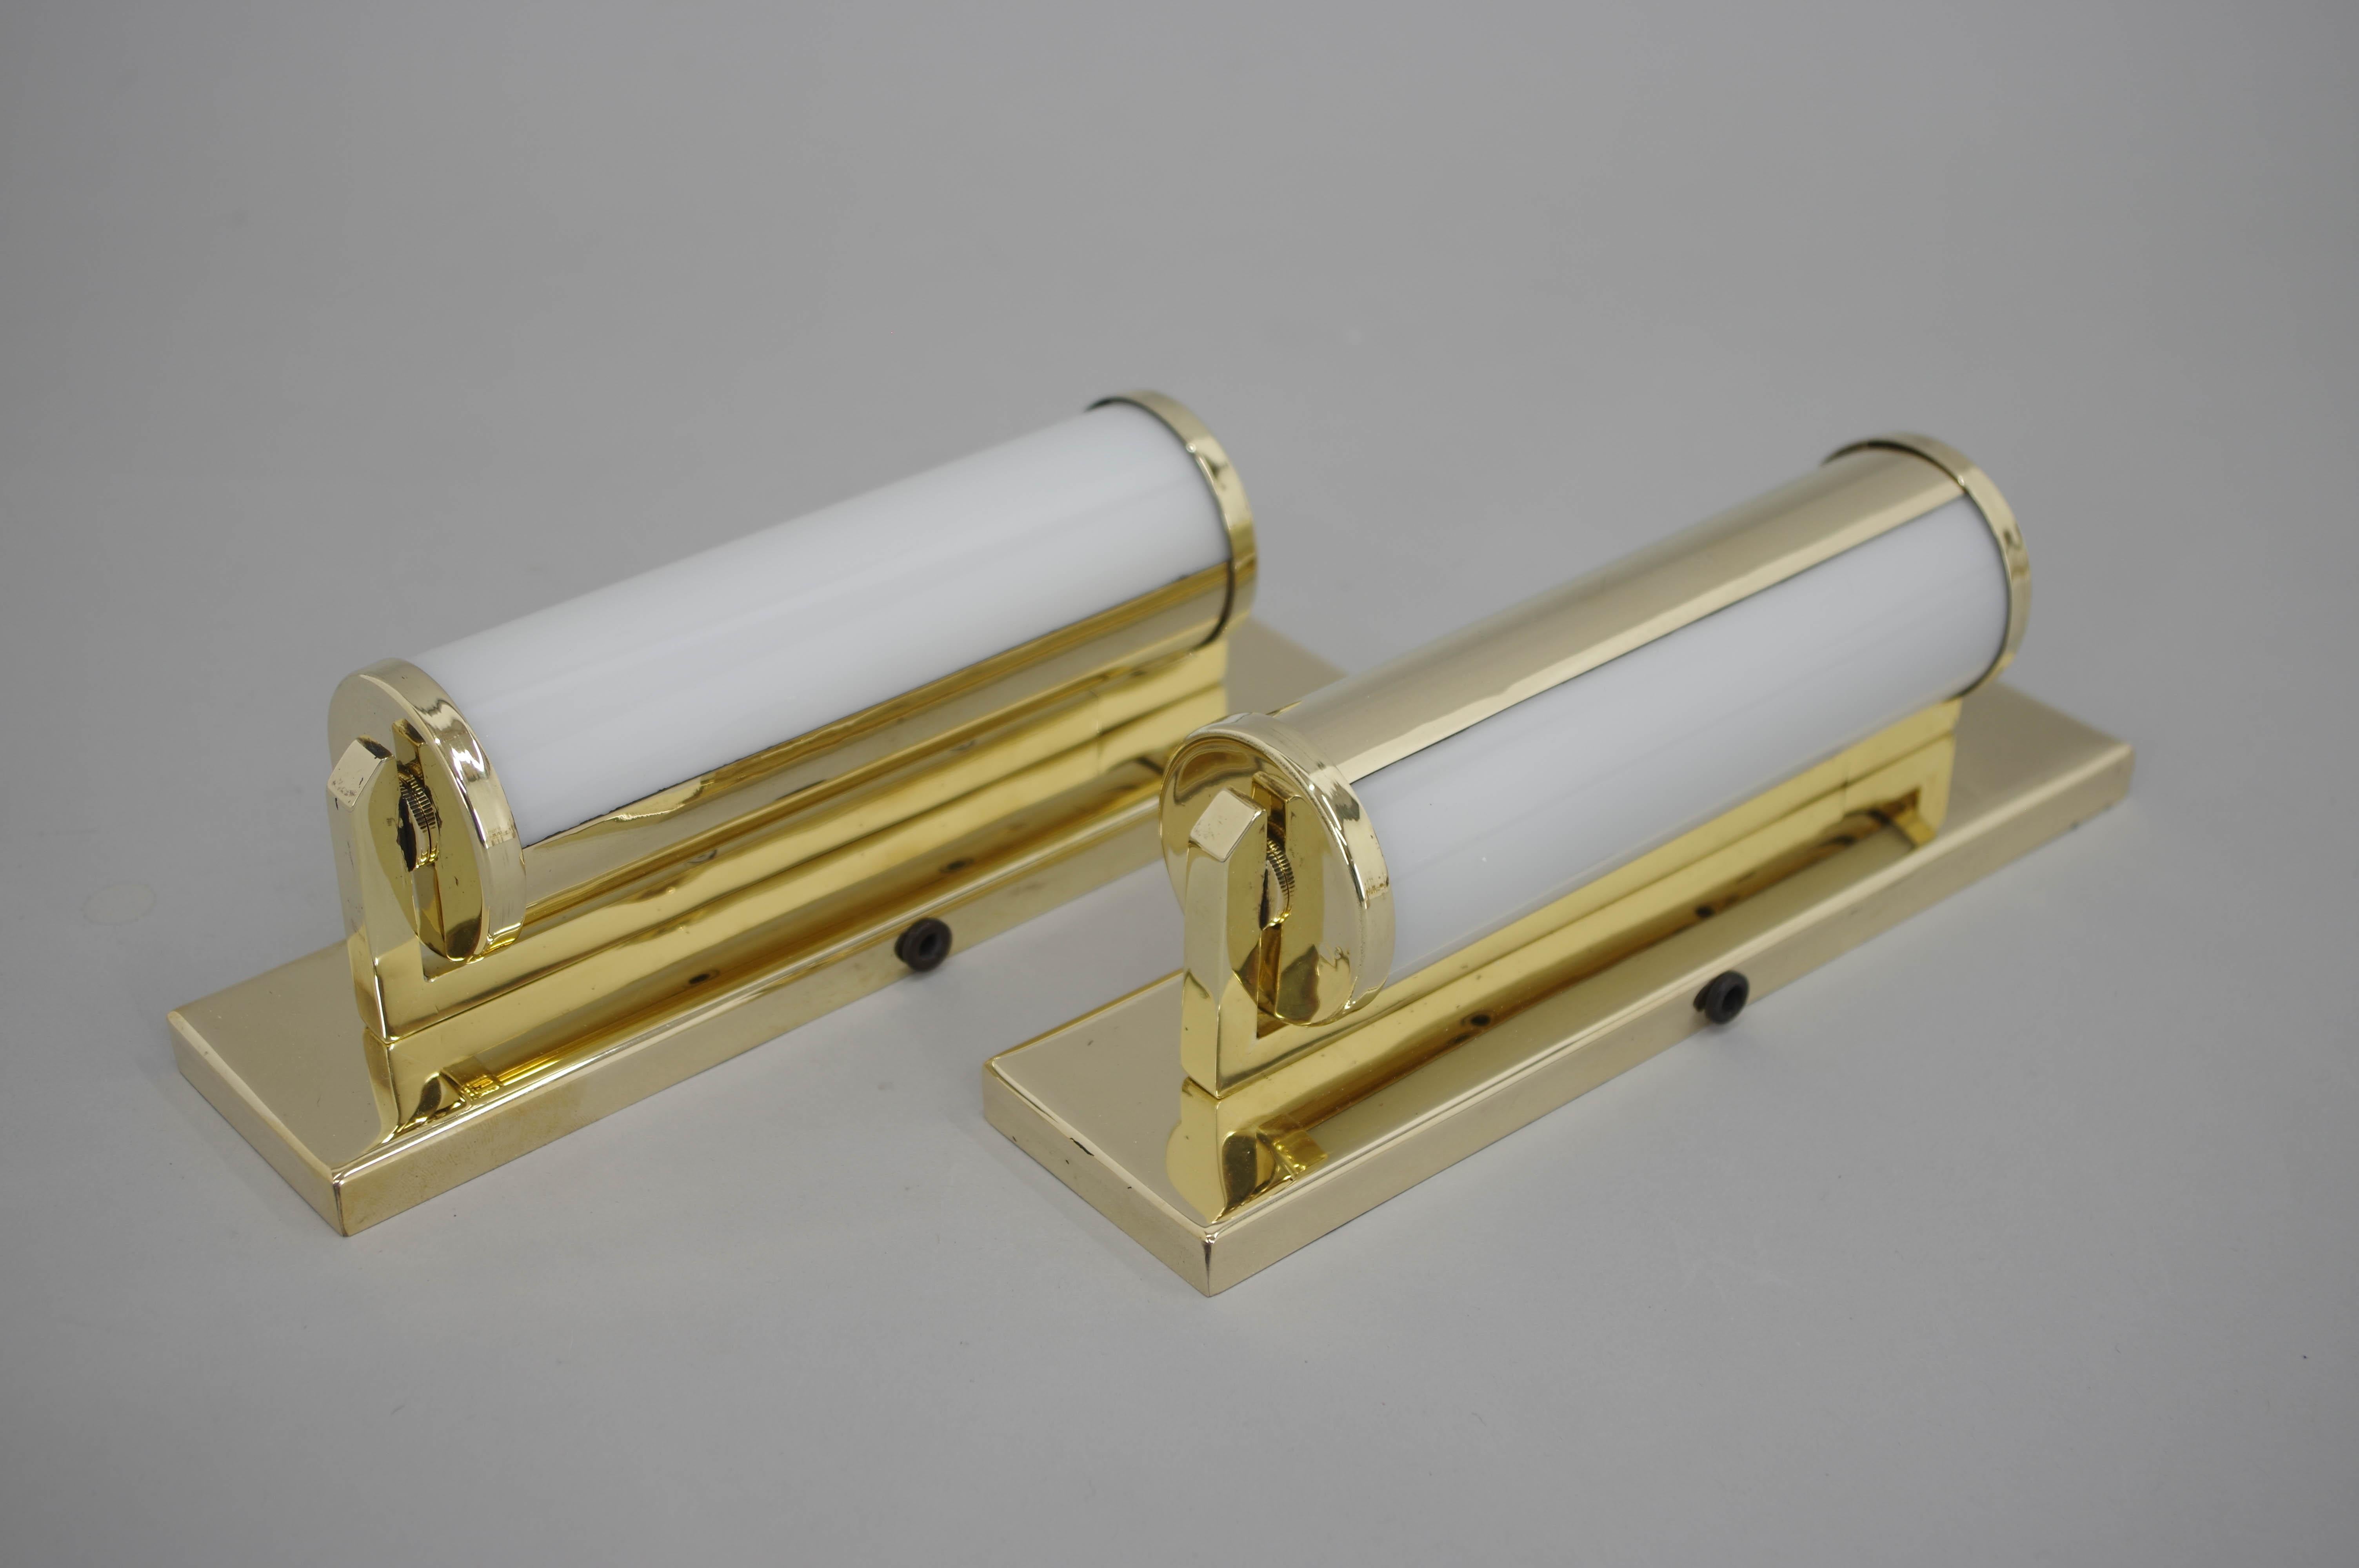 Zwei Art Deco / Funktionalistische Wandlampen mit drehbarem Schirm.
Restauriert: gereinigt, poliert, neu verkabelt
1x25W, E12-E14 Glühbirne
US-Verkabelung kompatibel